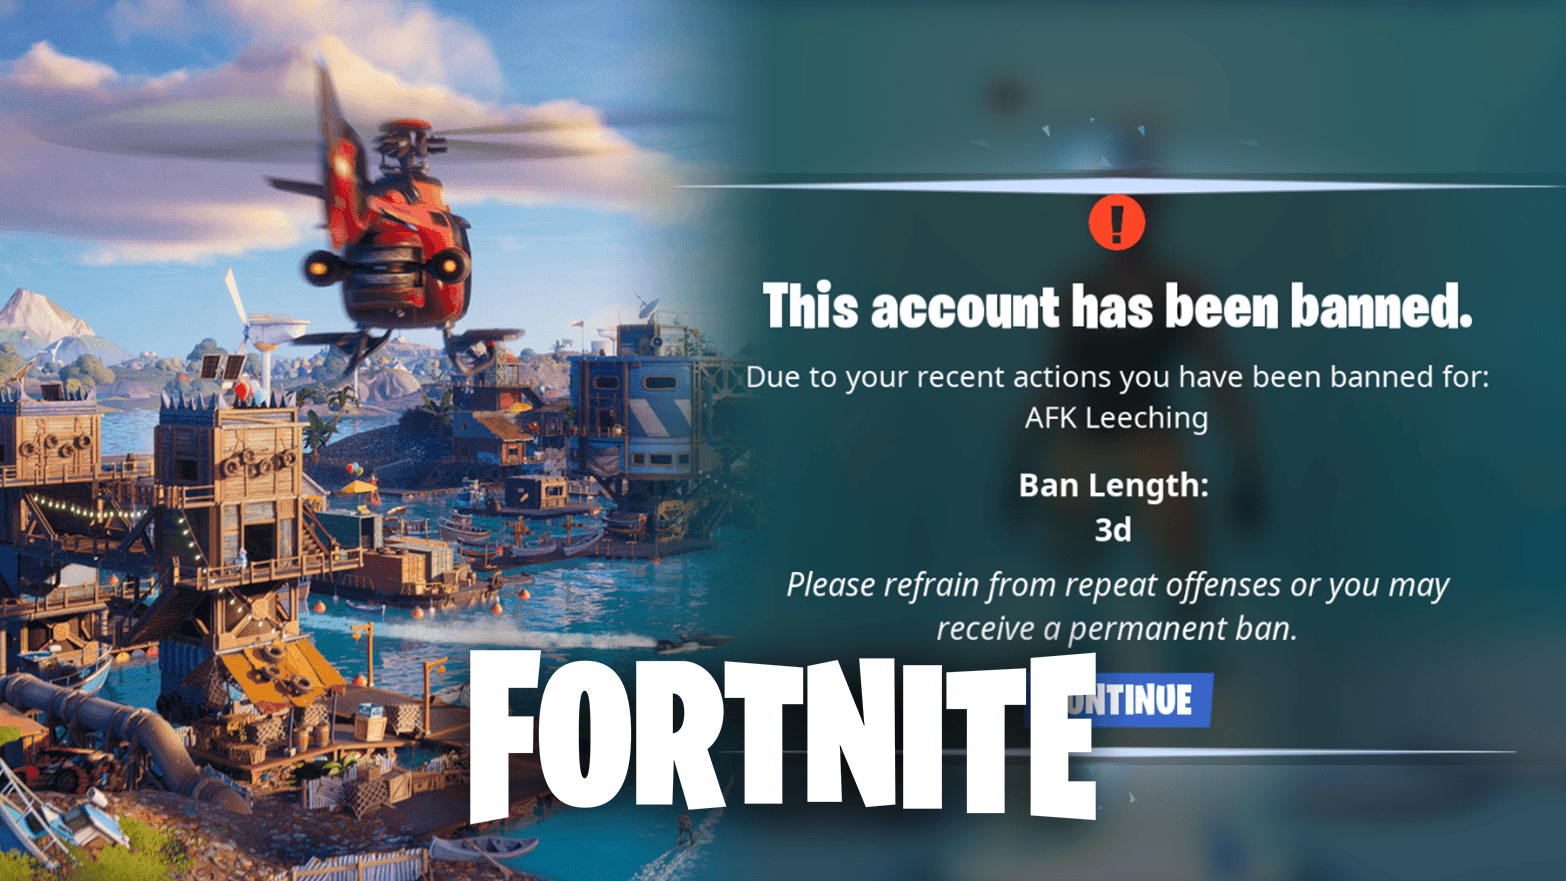 Fortnite Season 3 gameplay / Fortnite account ban